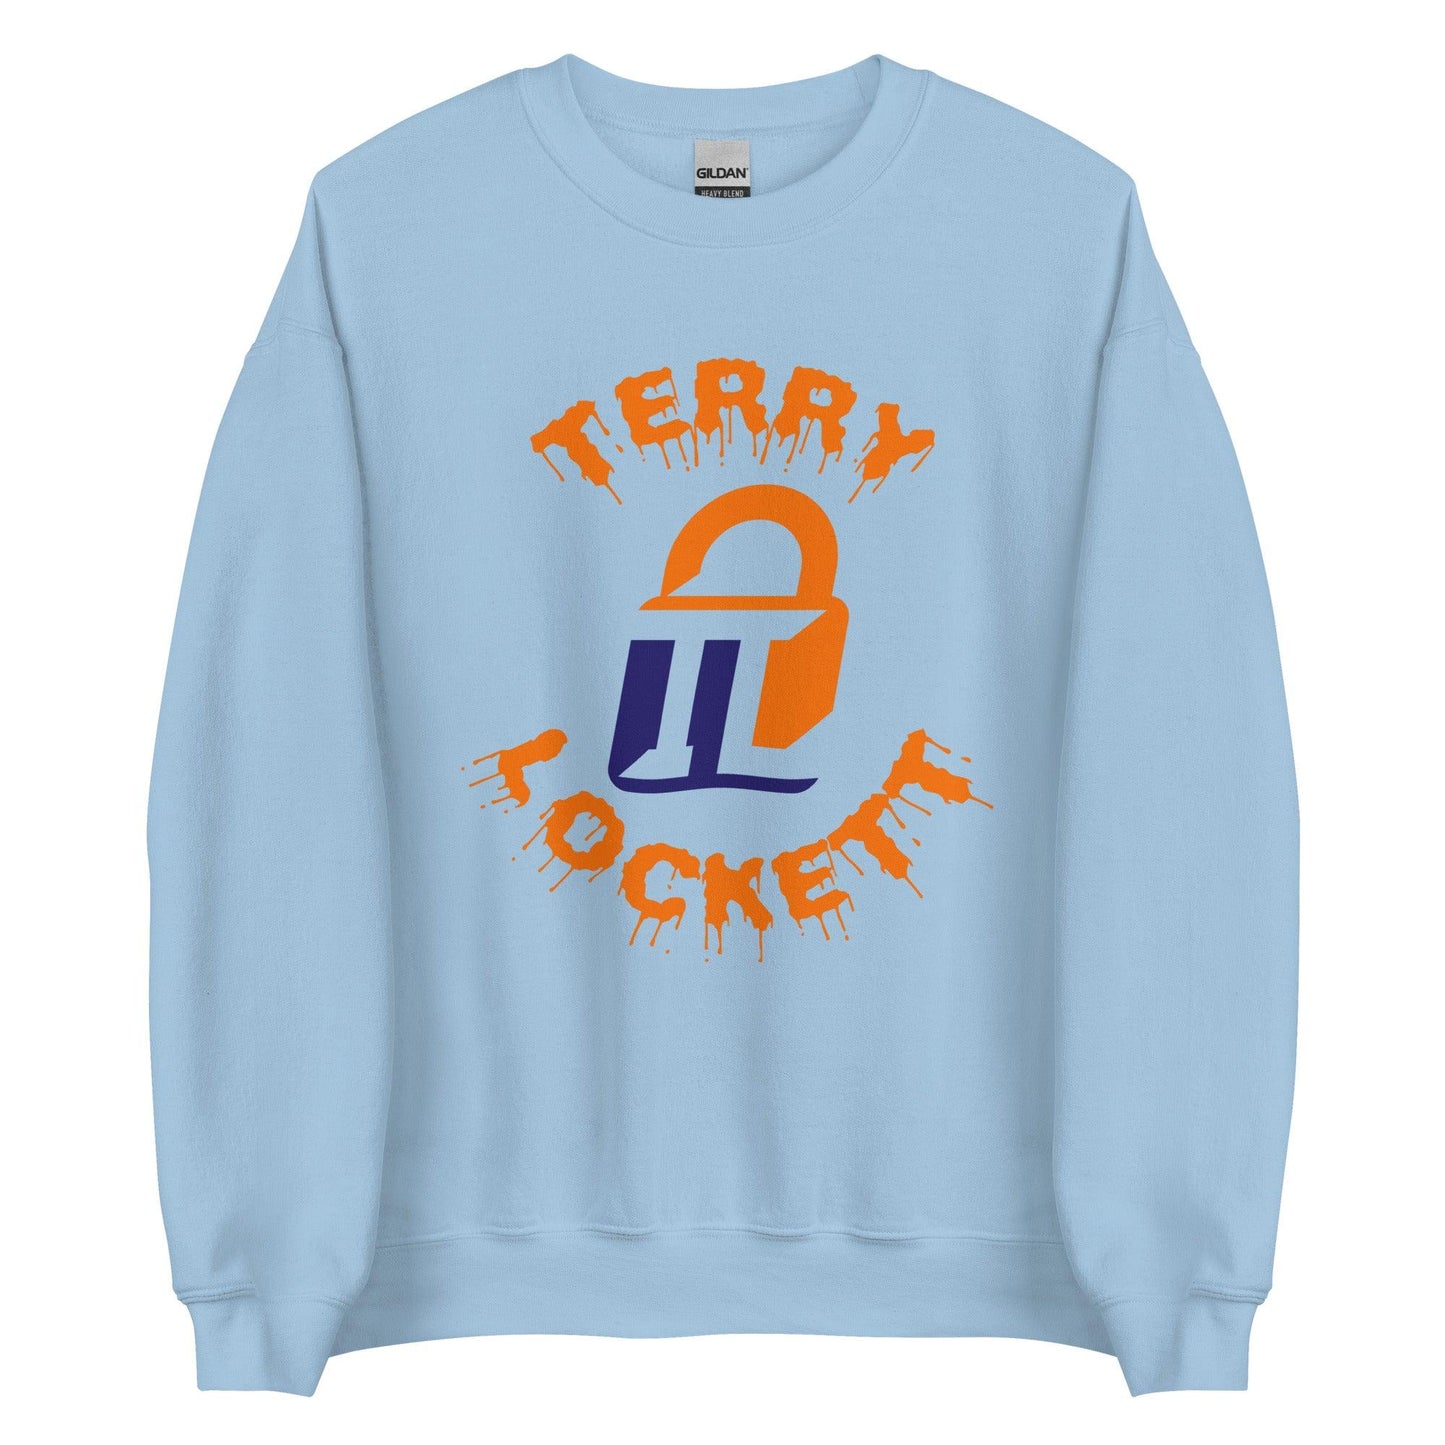 Terry Lockett "Elite" Sweatshirt - Fan Arch